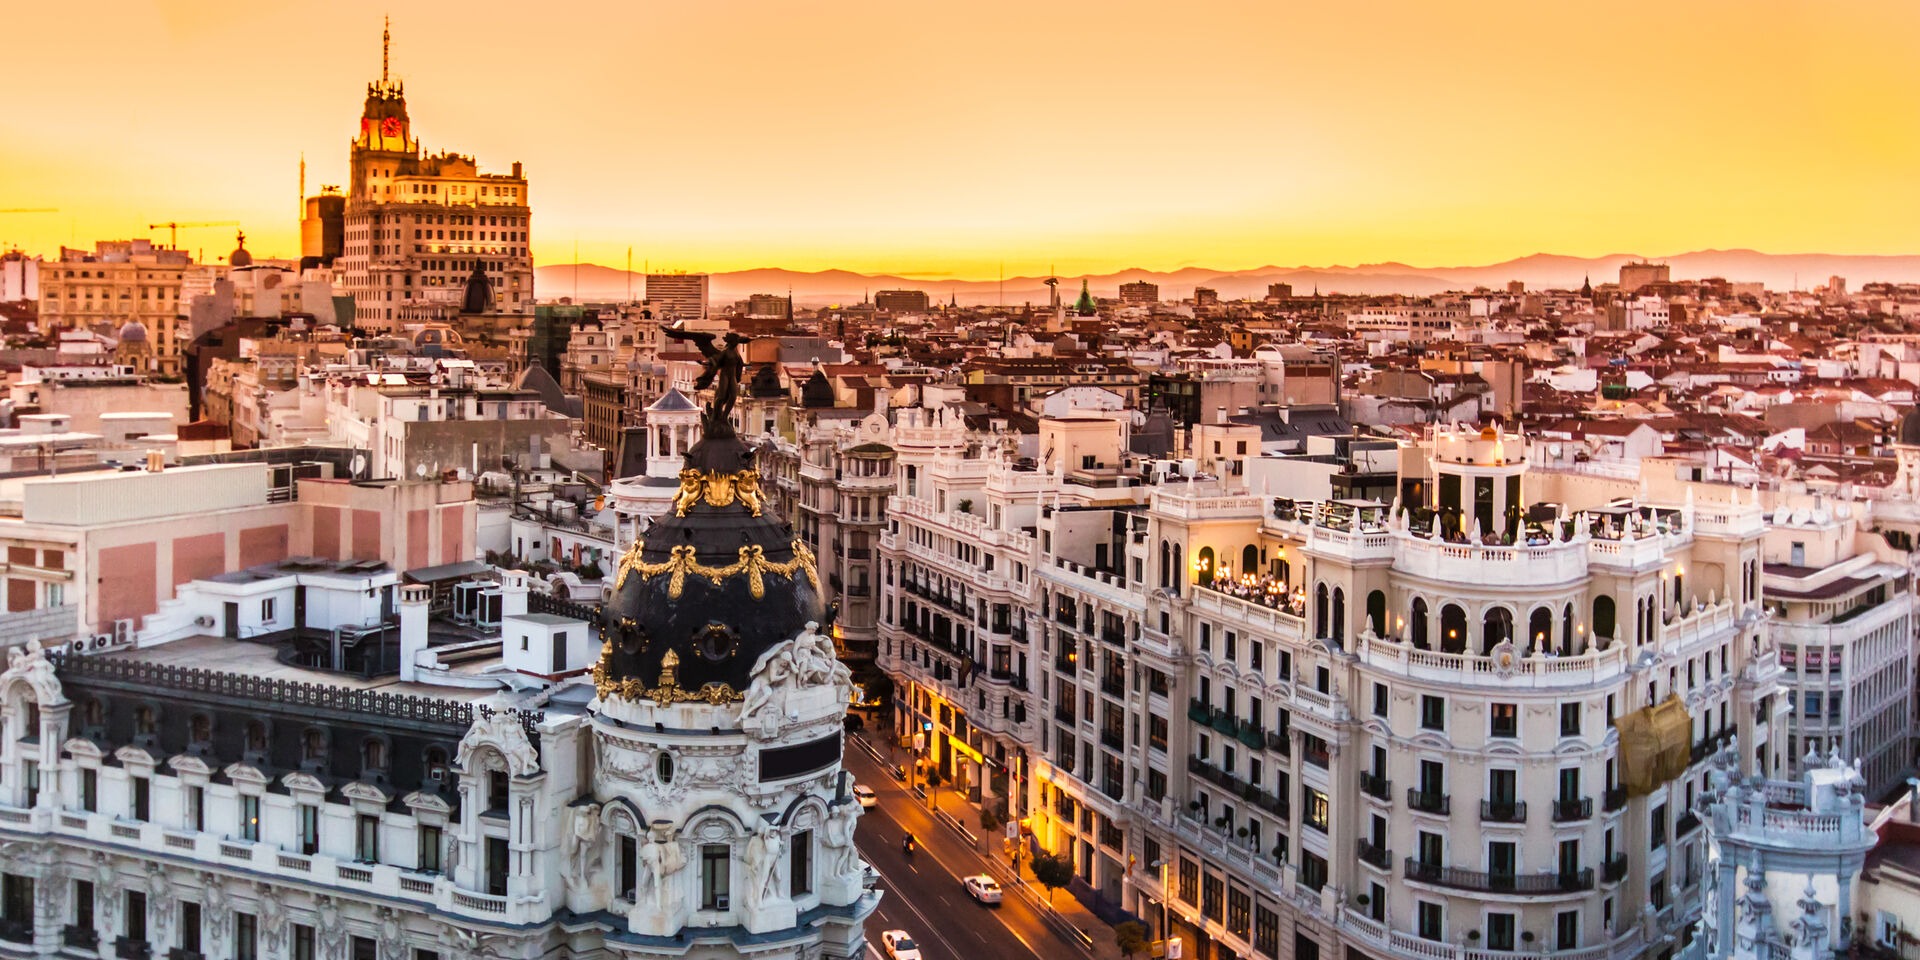 Passi per prenotare il tuo appartamento in affitto e goderti Madrid per qualche mese!